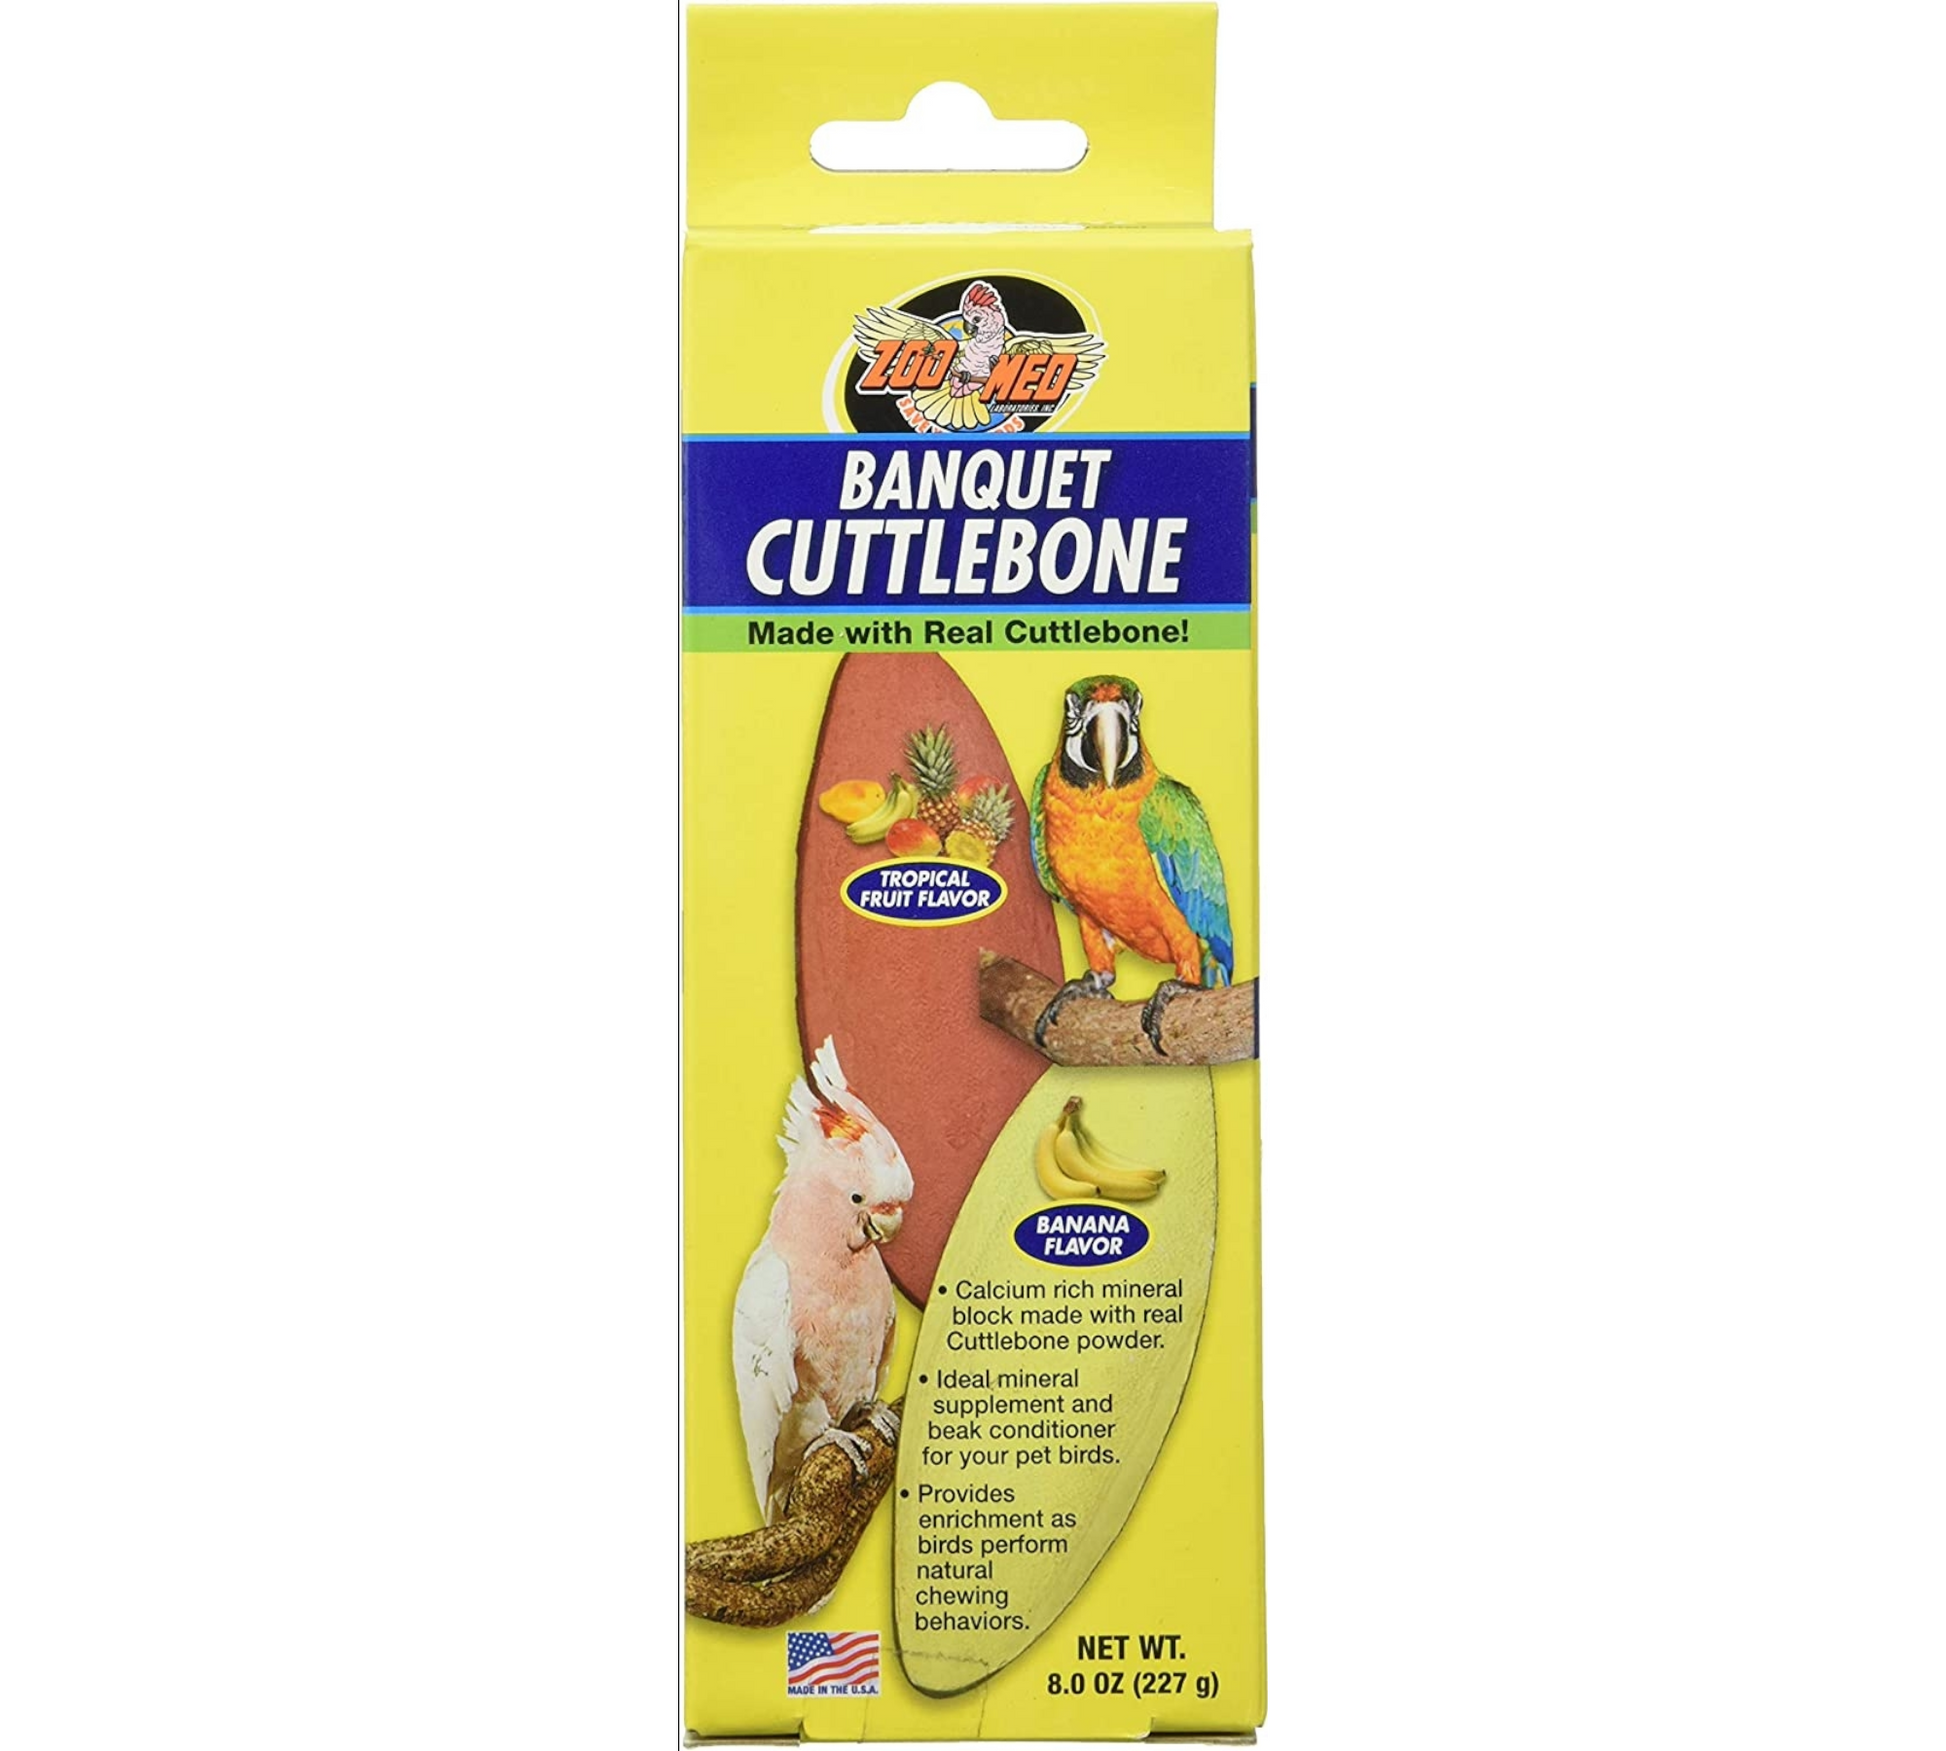 Canine's World Bird Cuttlebones Banquet Cuttlebone - Tropical Fruit & Banana Flavor, 2 Count Zoo Med